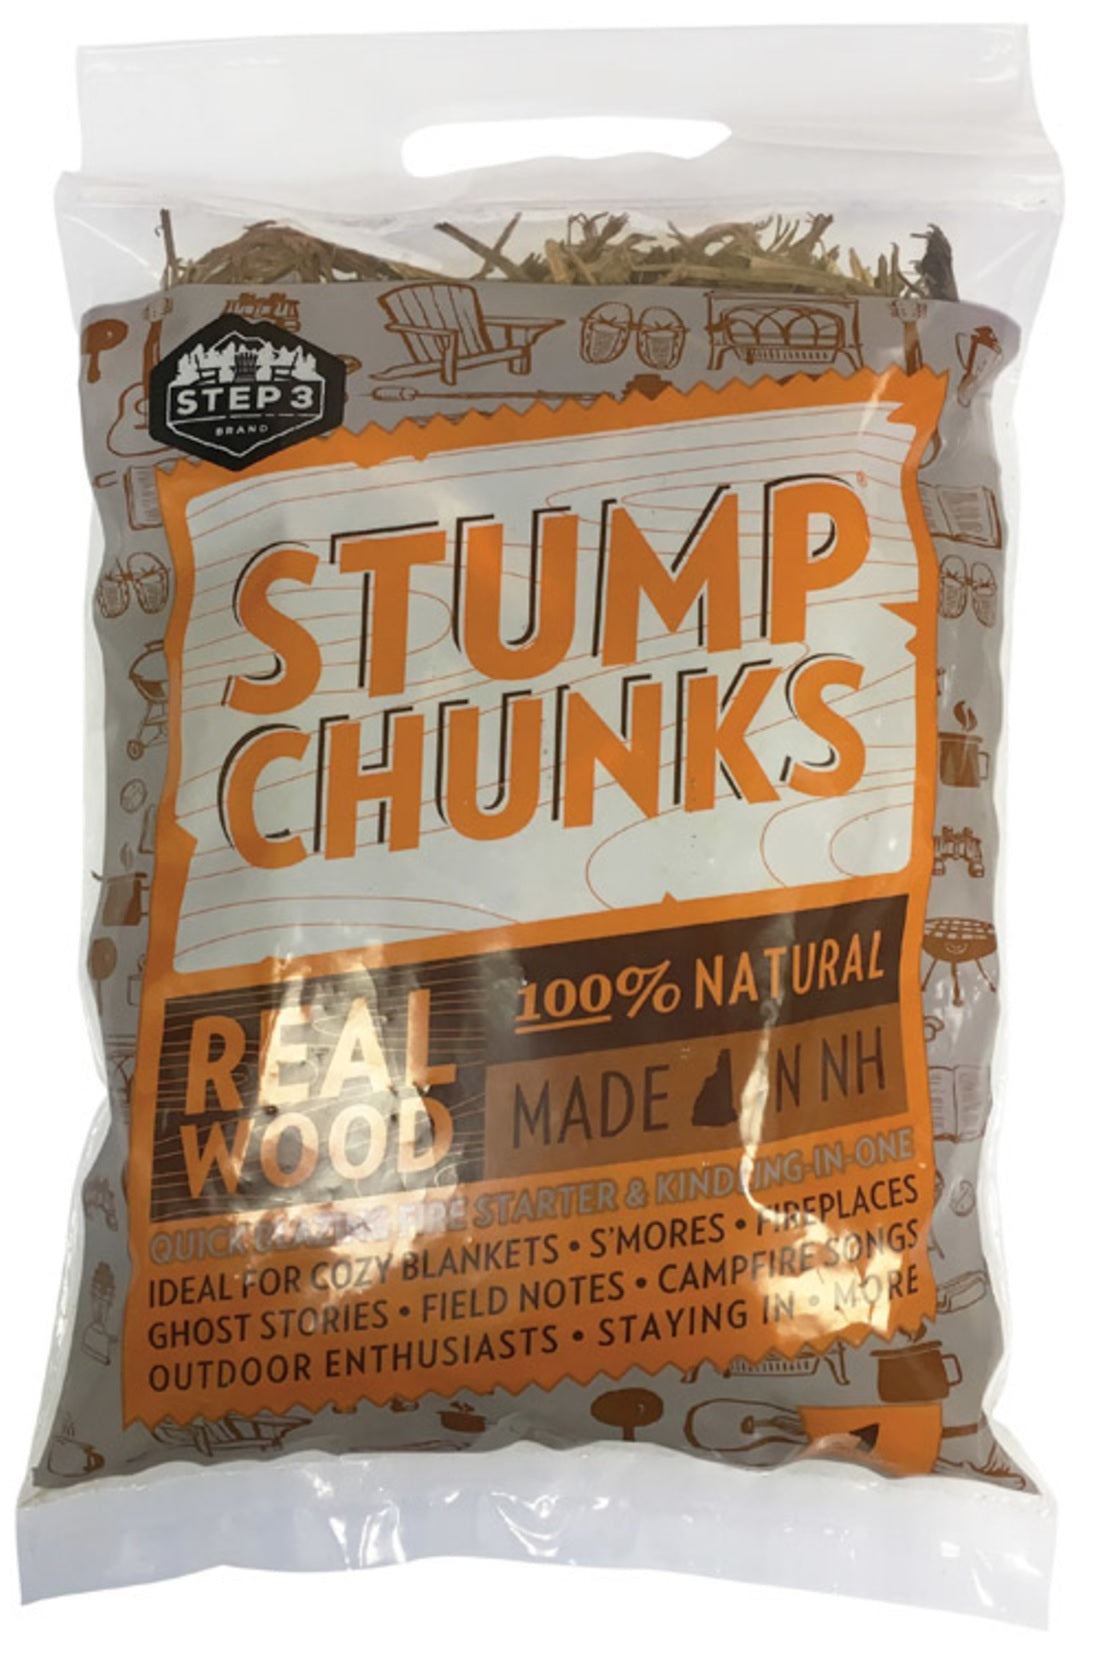 Stump Chunks SC6 Fire Starter, 0.1 Cubic Feet